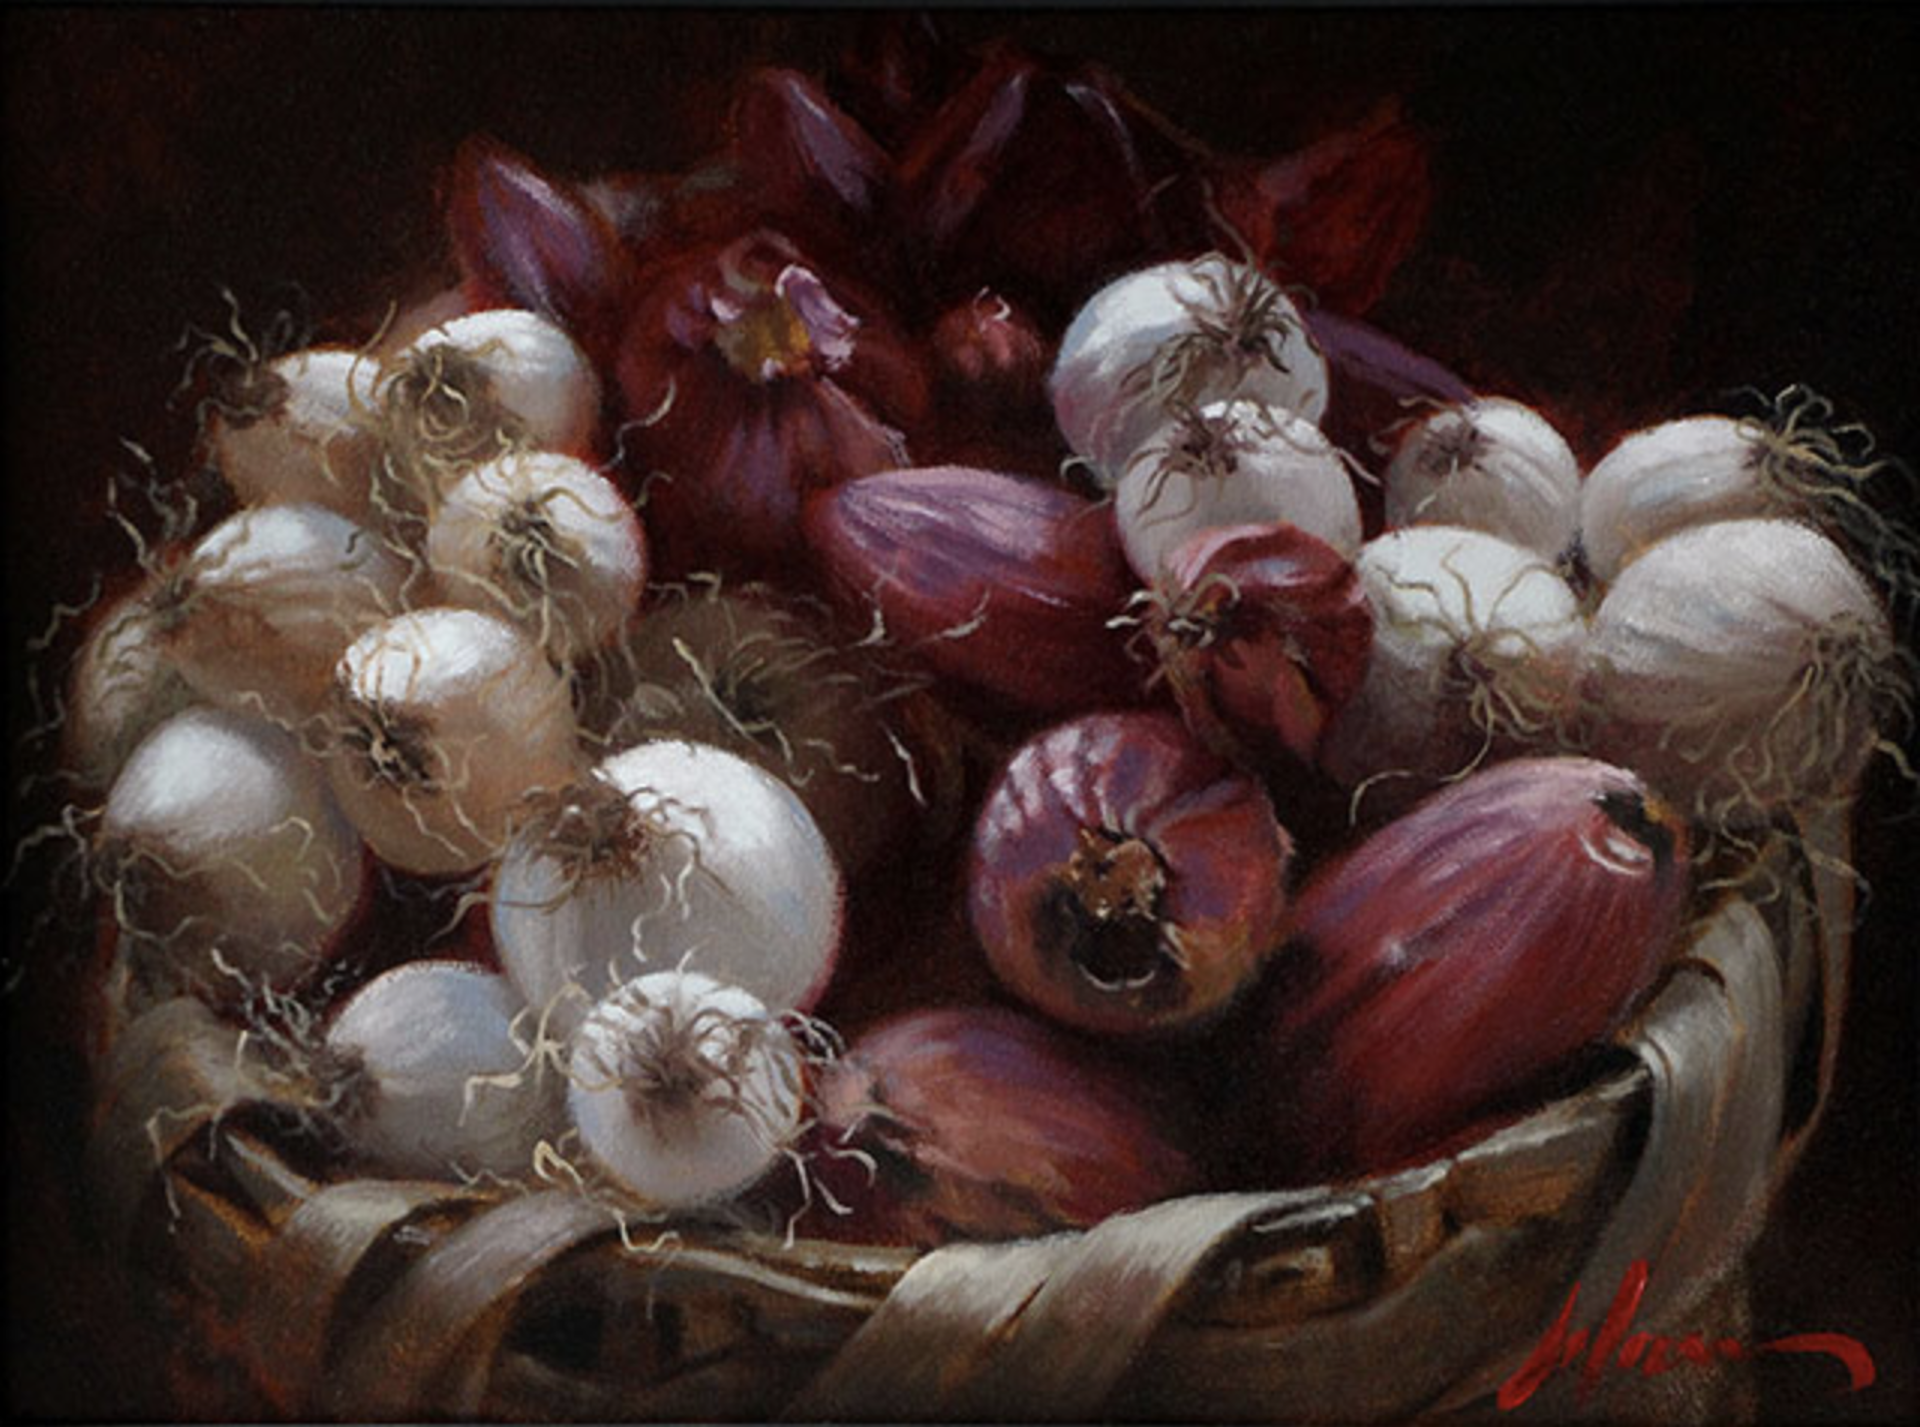 Onion Basket by Michael Lynn Adams